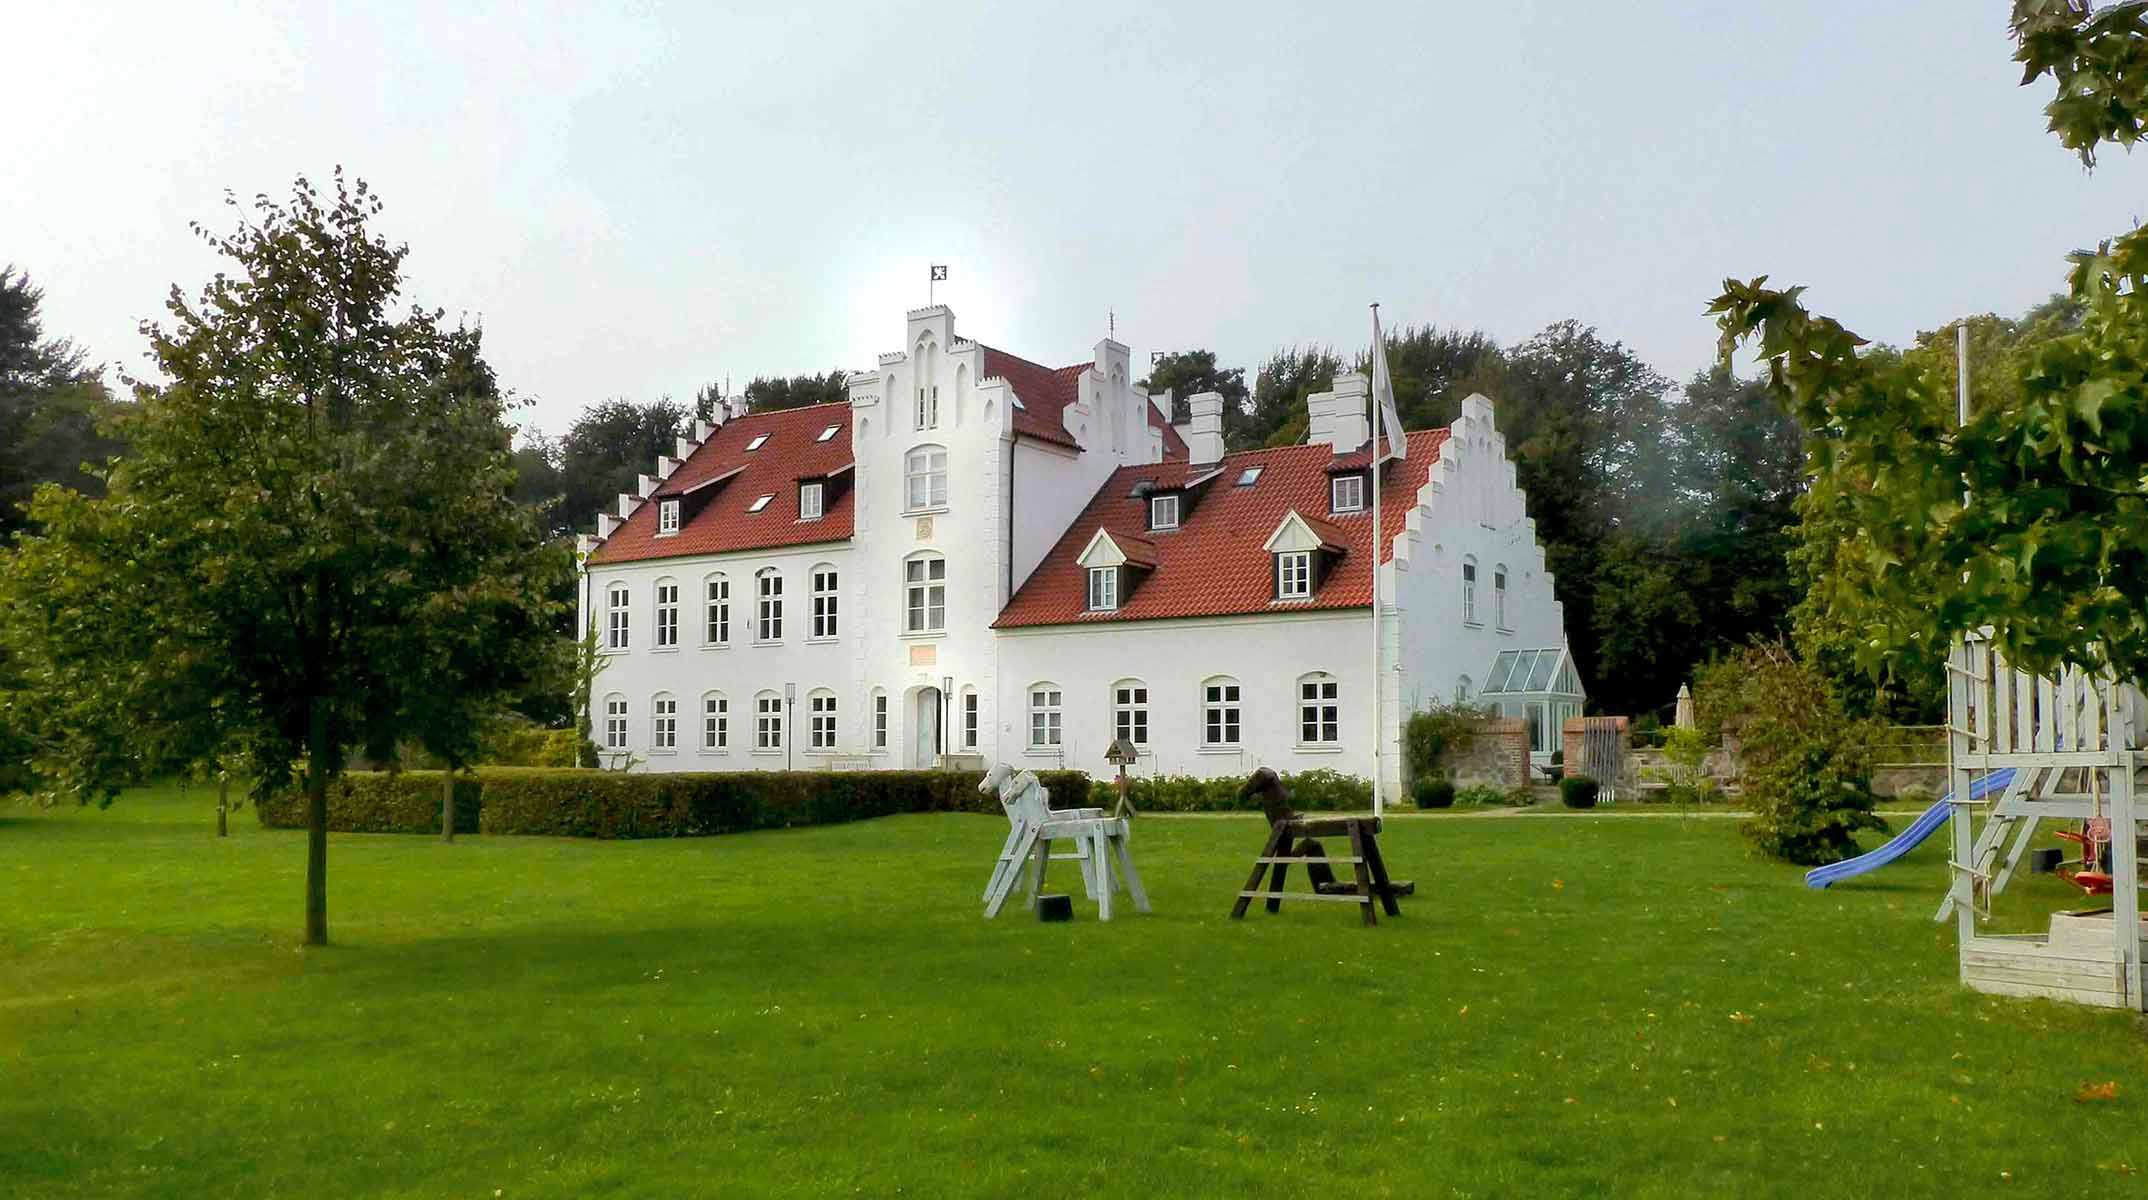 Abb.2: Streu, Lkr. Vorpommern- Rügen, Gutshaus, Hofseite, 2014 